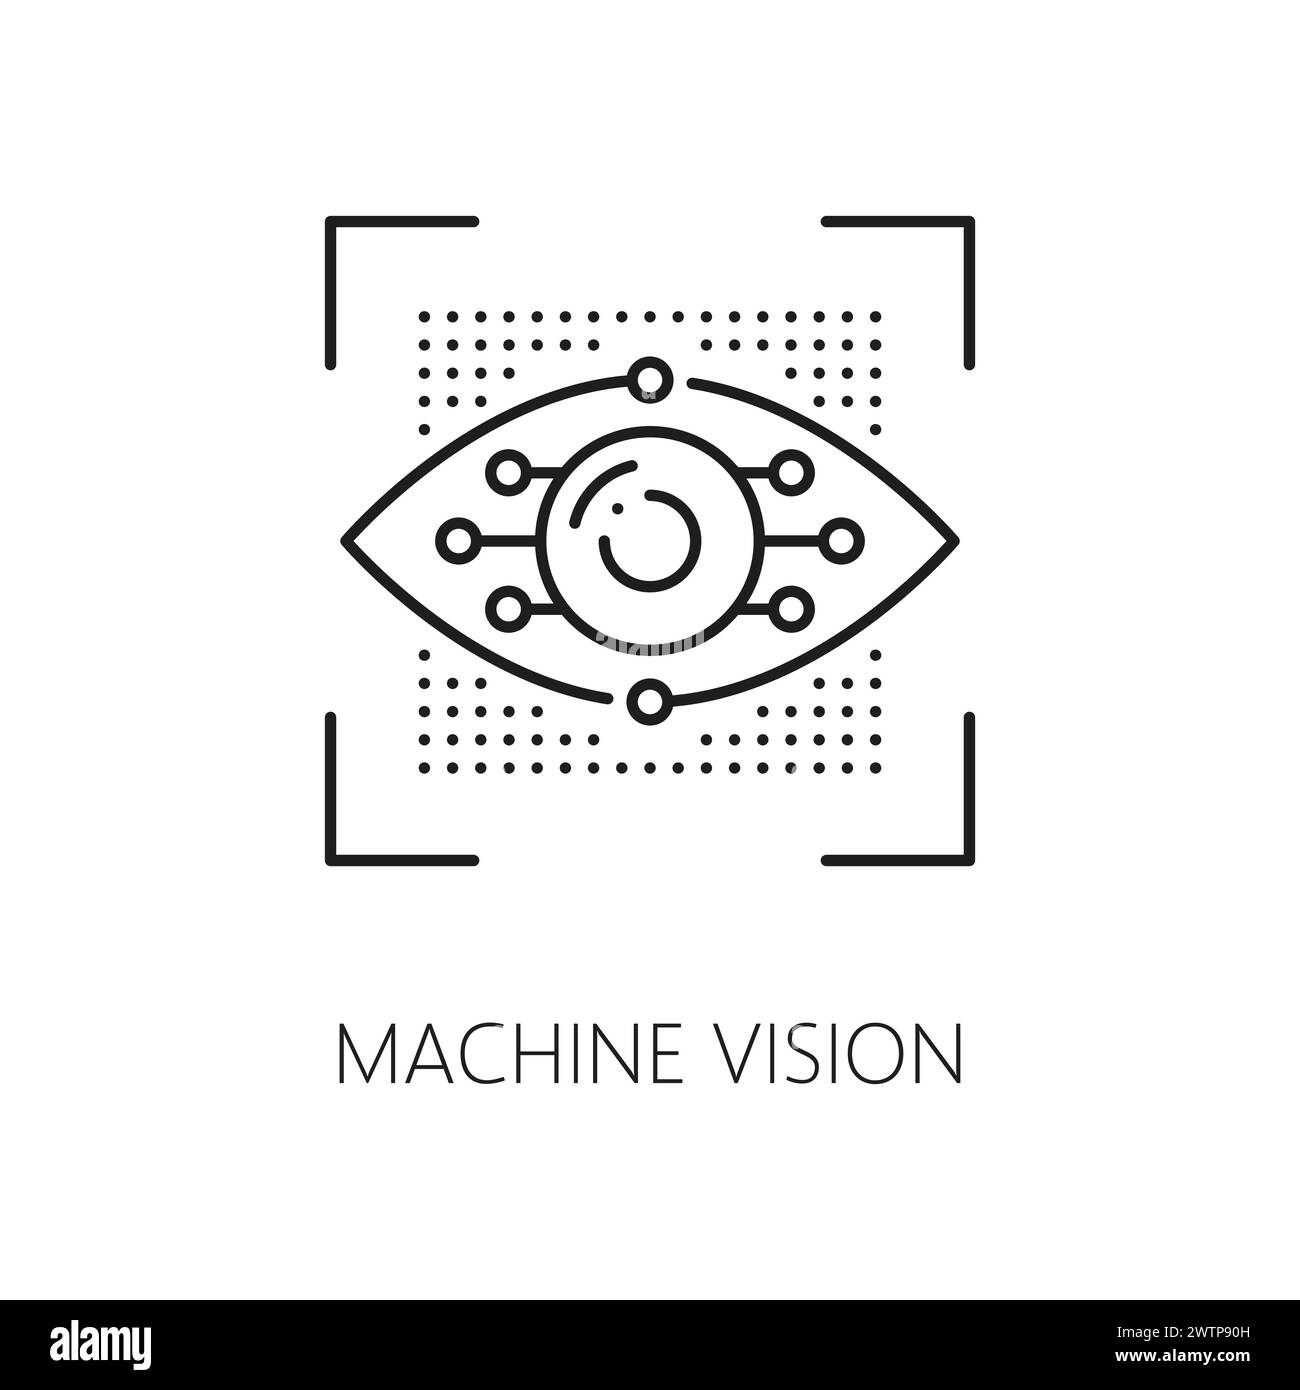 Maschinelles Sehen und Lernen, KI-Algorithmus-Symbol für künstliche Intelligenz. KI-Datenanalyse, technologische Innovation, maschinelles Lernen Wissenschaft Dünnlinienvektor-Piktogramm mit künstlichem Augapfel Stock Vektor